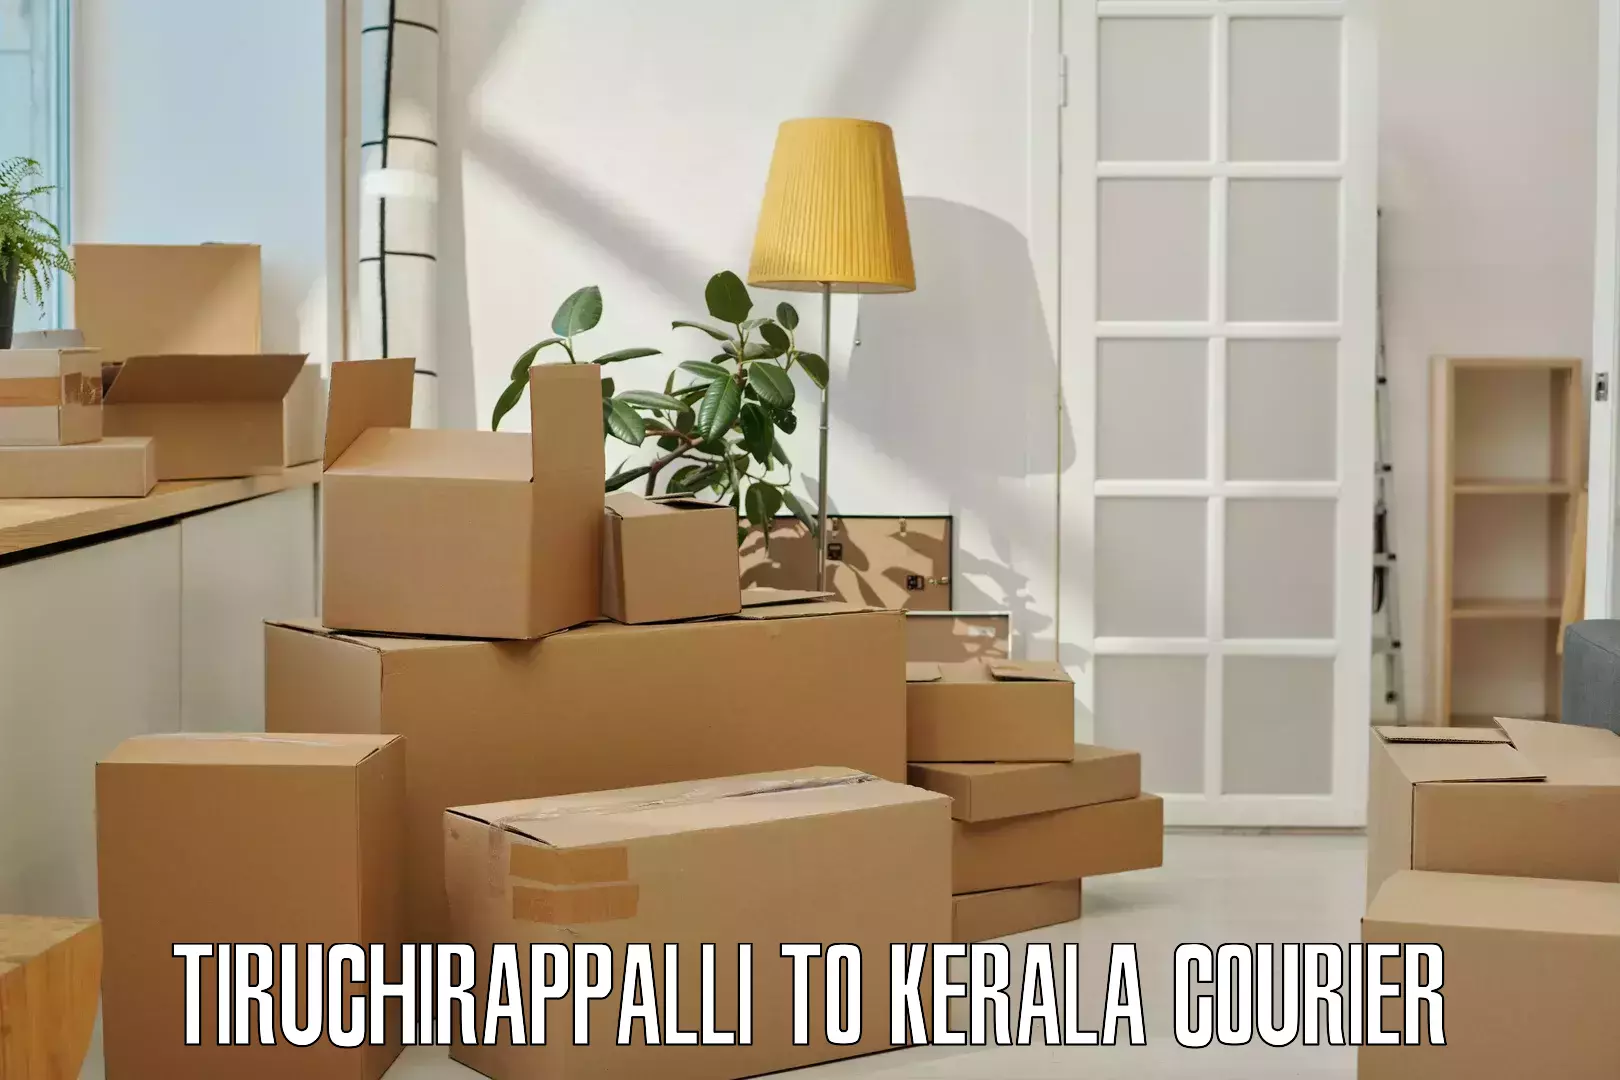 Courier service partnerships Tiruchirappalli to Kalluvathukkal